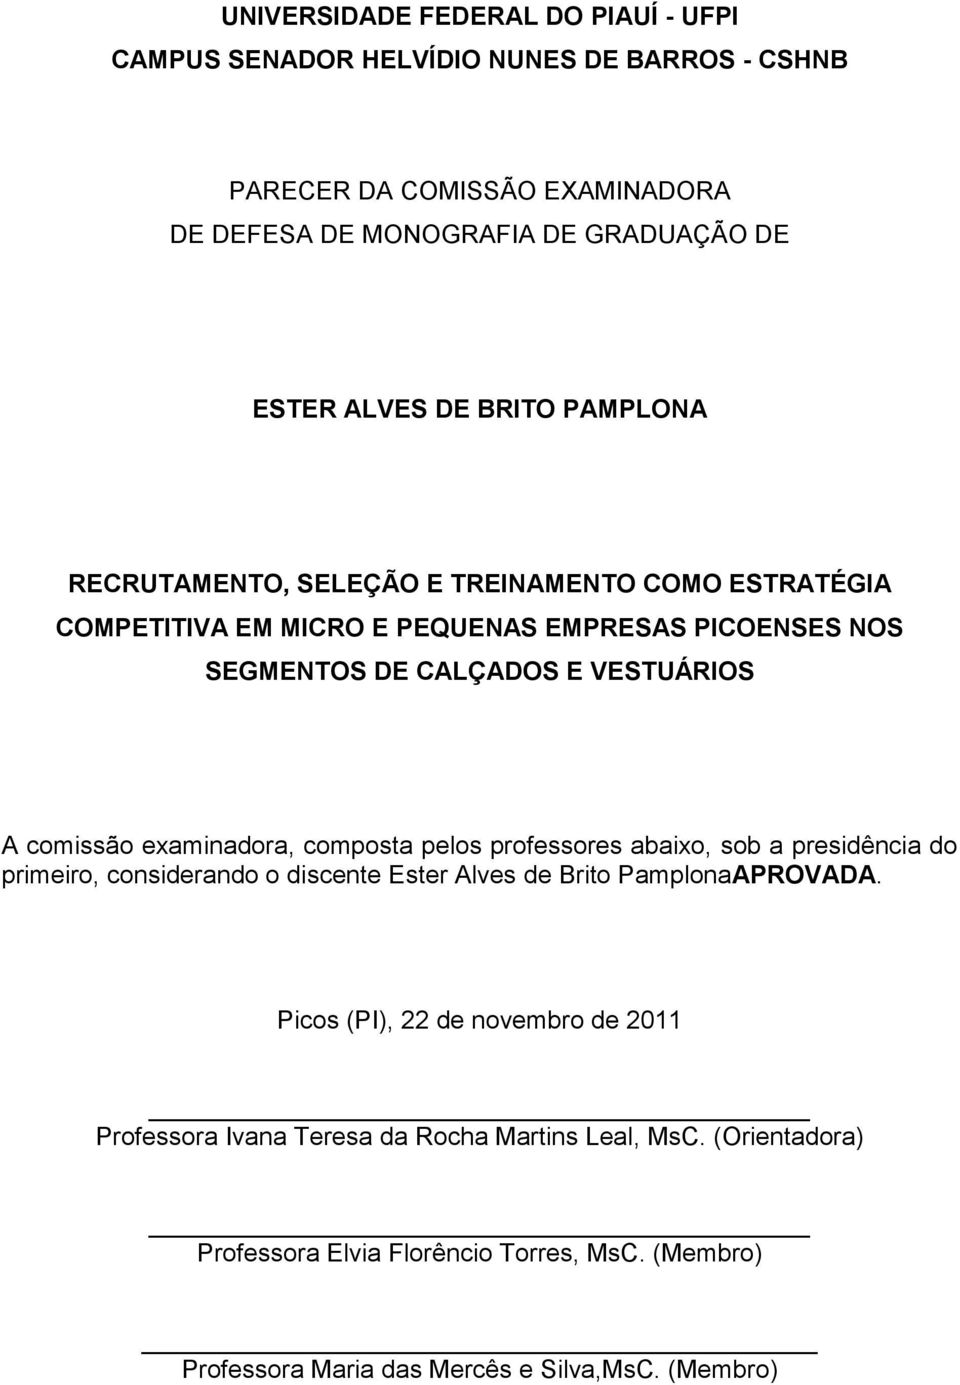 examinadora, composta pelos professores abaixo, sob a presidência do primeiro, considerando o discente Ester Alves de Brito PamplonaAPROVADA.